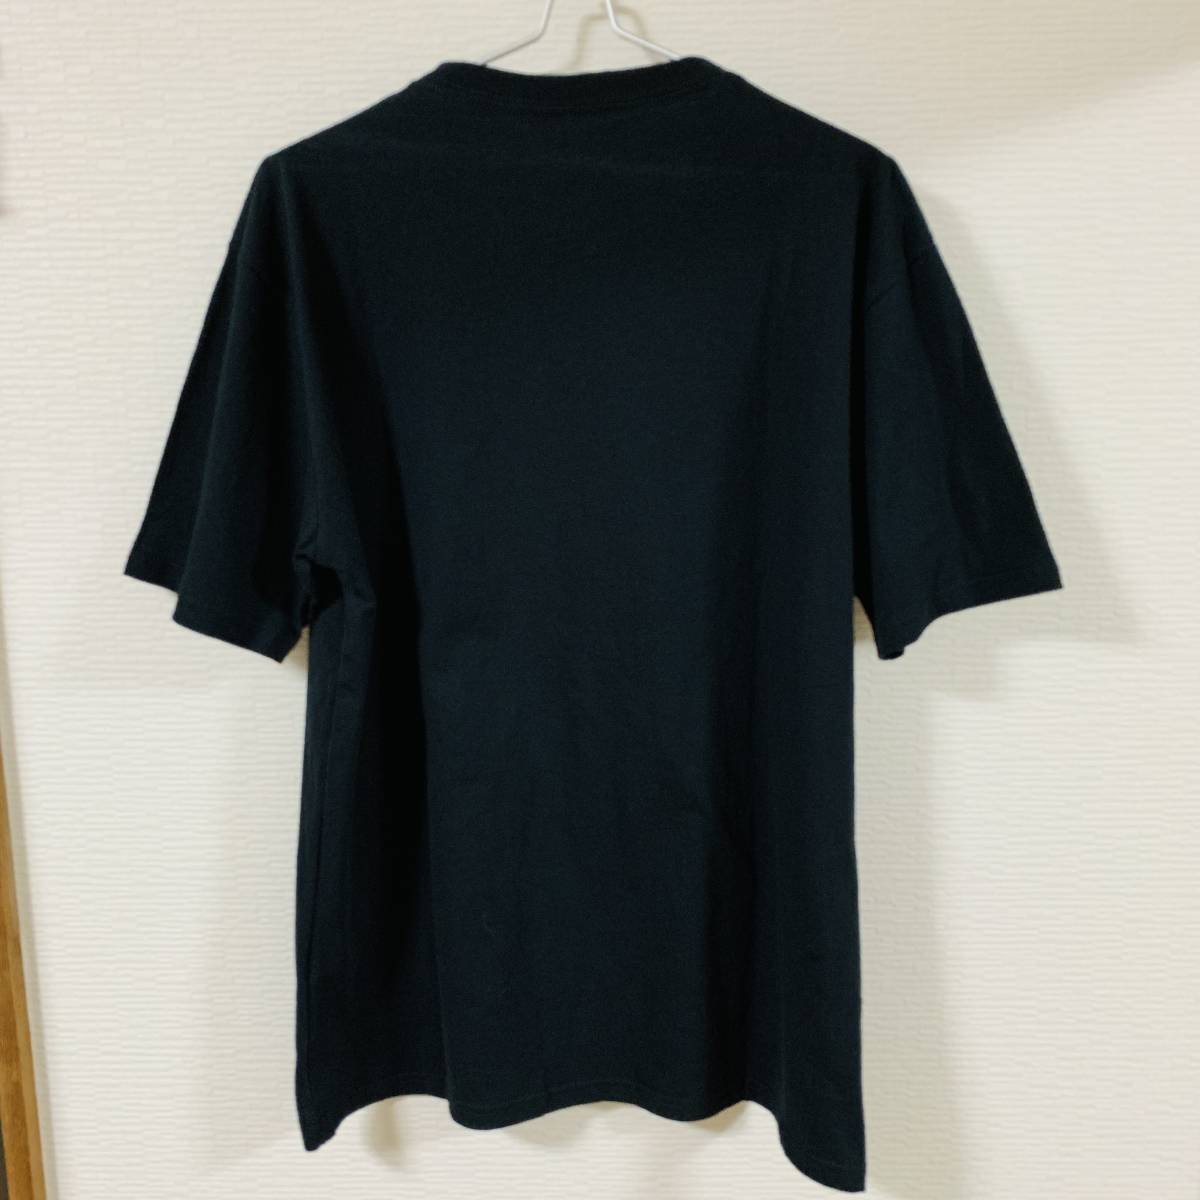 QUEEN (クイーン) - 半袖 グラフィック Tシャツ 黒色 3Lサイズ ロゴ バンドT フレディーマーキュリー ロックT (タグ付き新品未使用品)_画像4